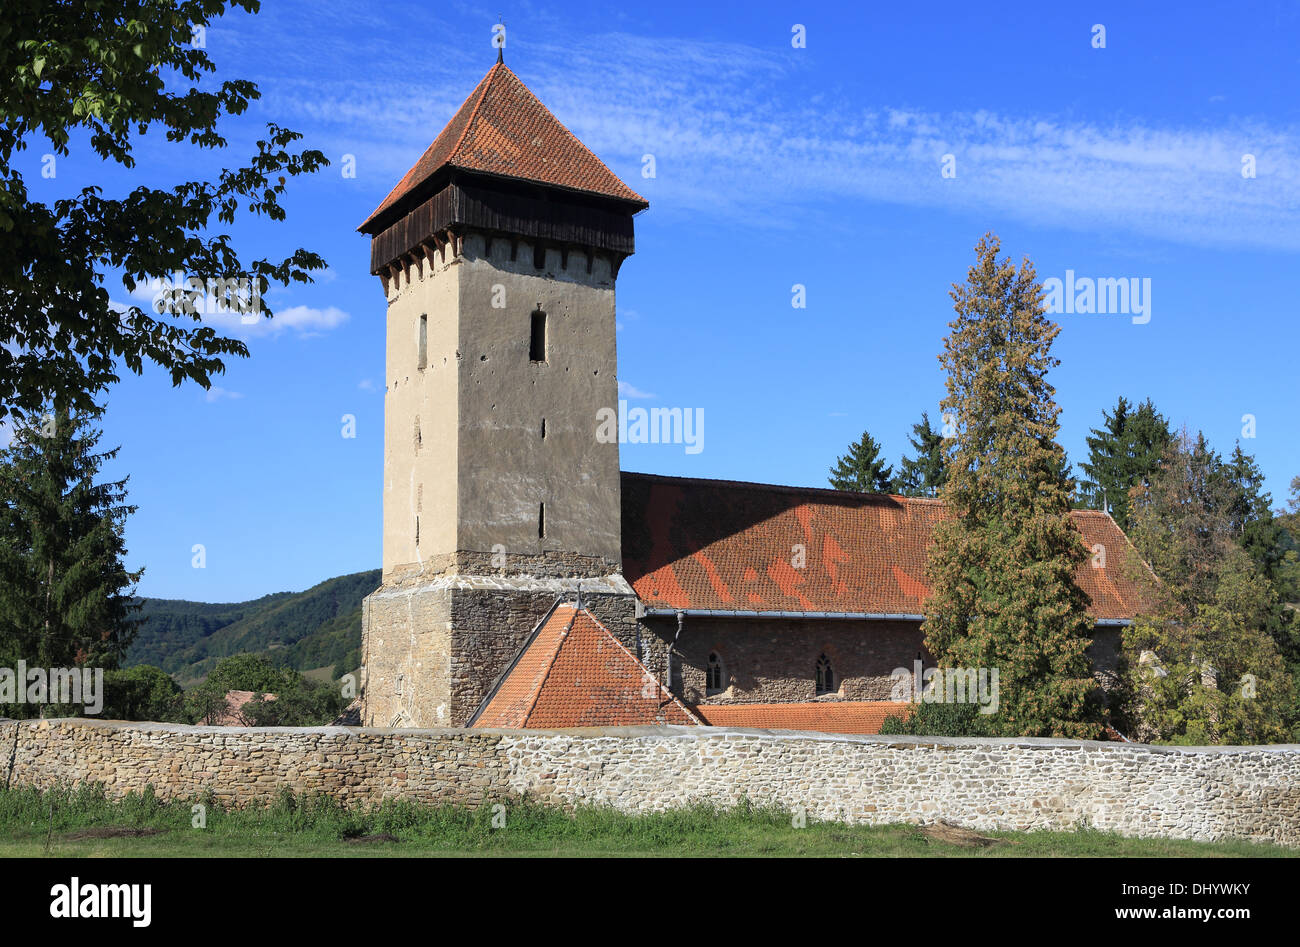 La chiesa fortificata in Malancrav, fortificata del villaggio sassone in Transilvania, dove PrinceCharles ha acquistato le proprietà, Romania Foto Stock